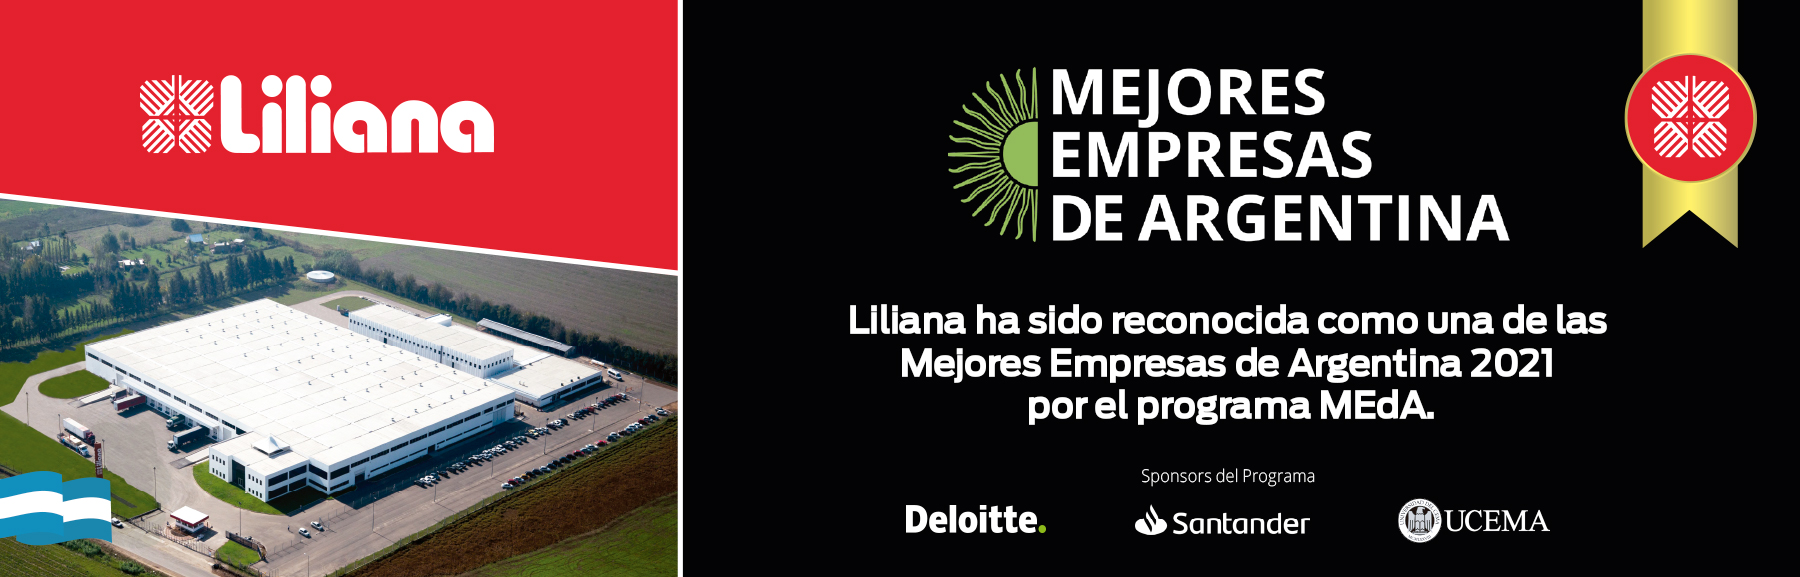 Liliana reconocida como una de las mejores empresas de Argentina